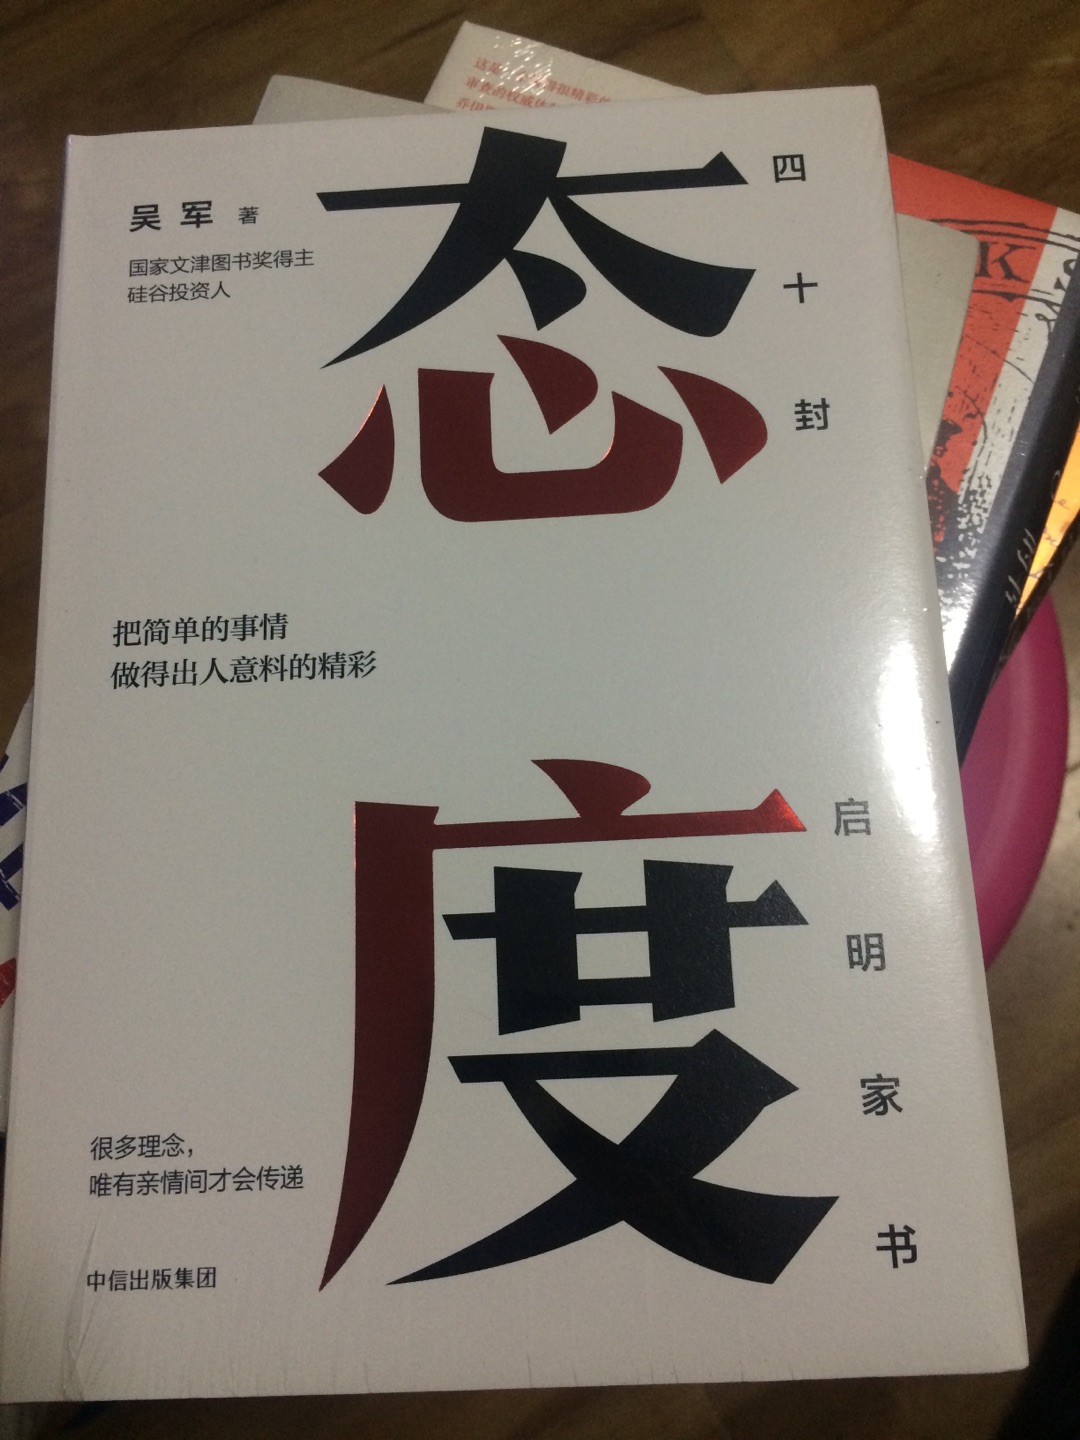 吴军先生的书，给了我人生智慧，很长见识